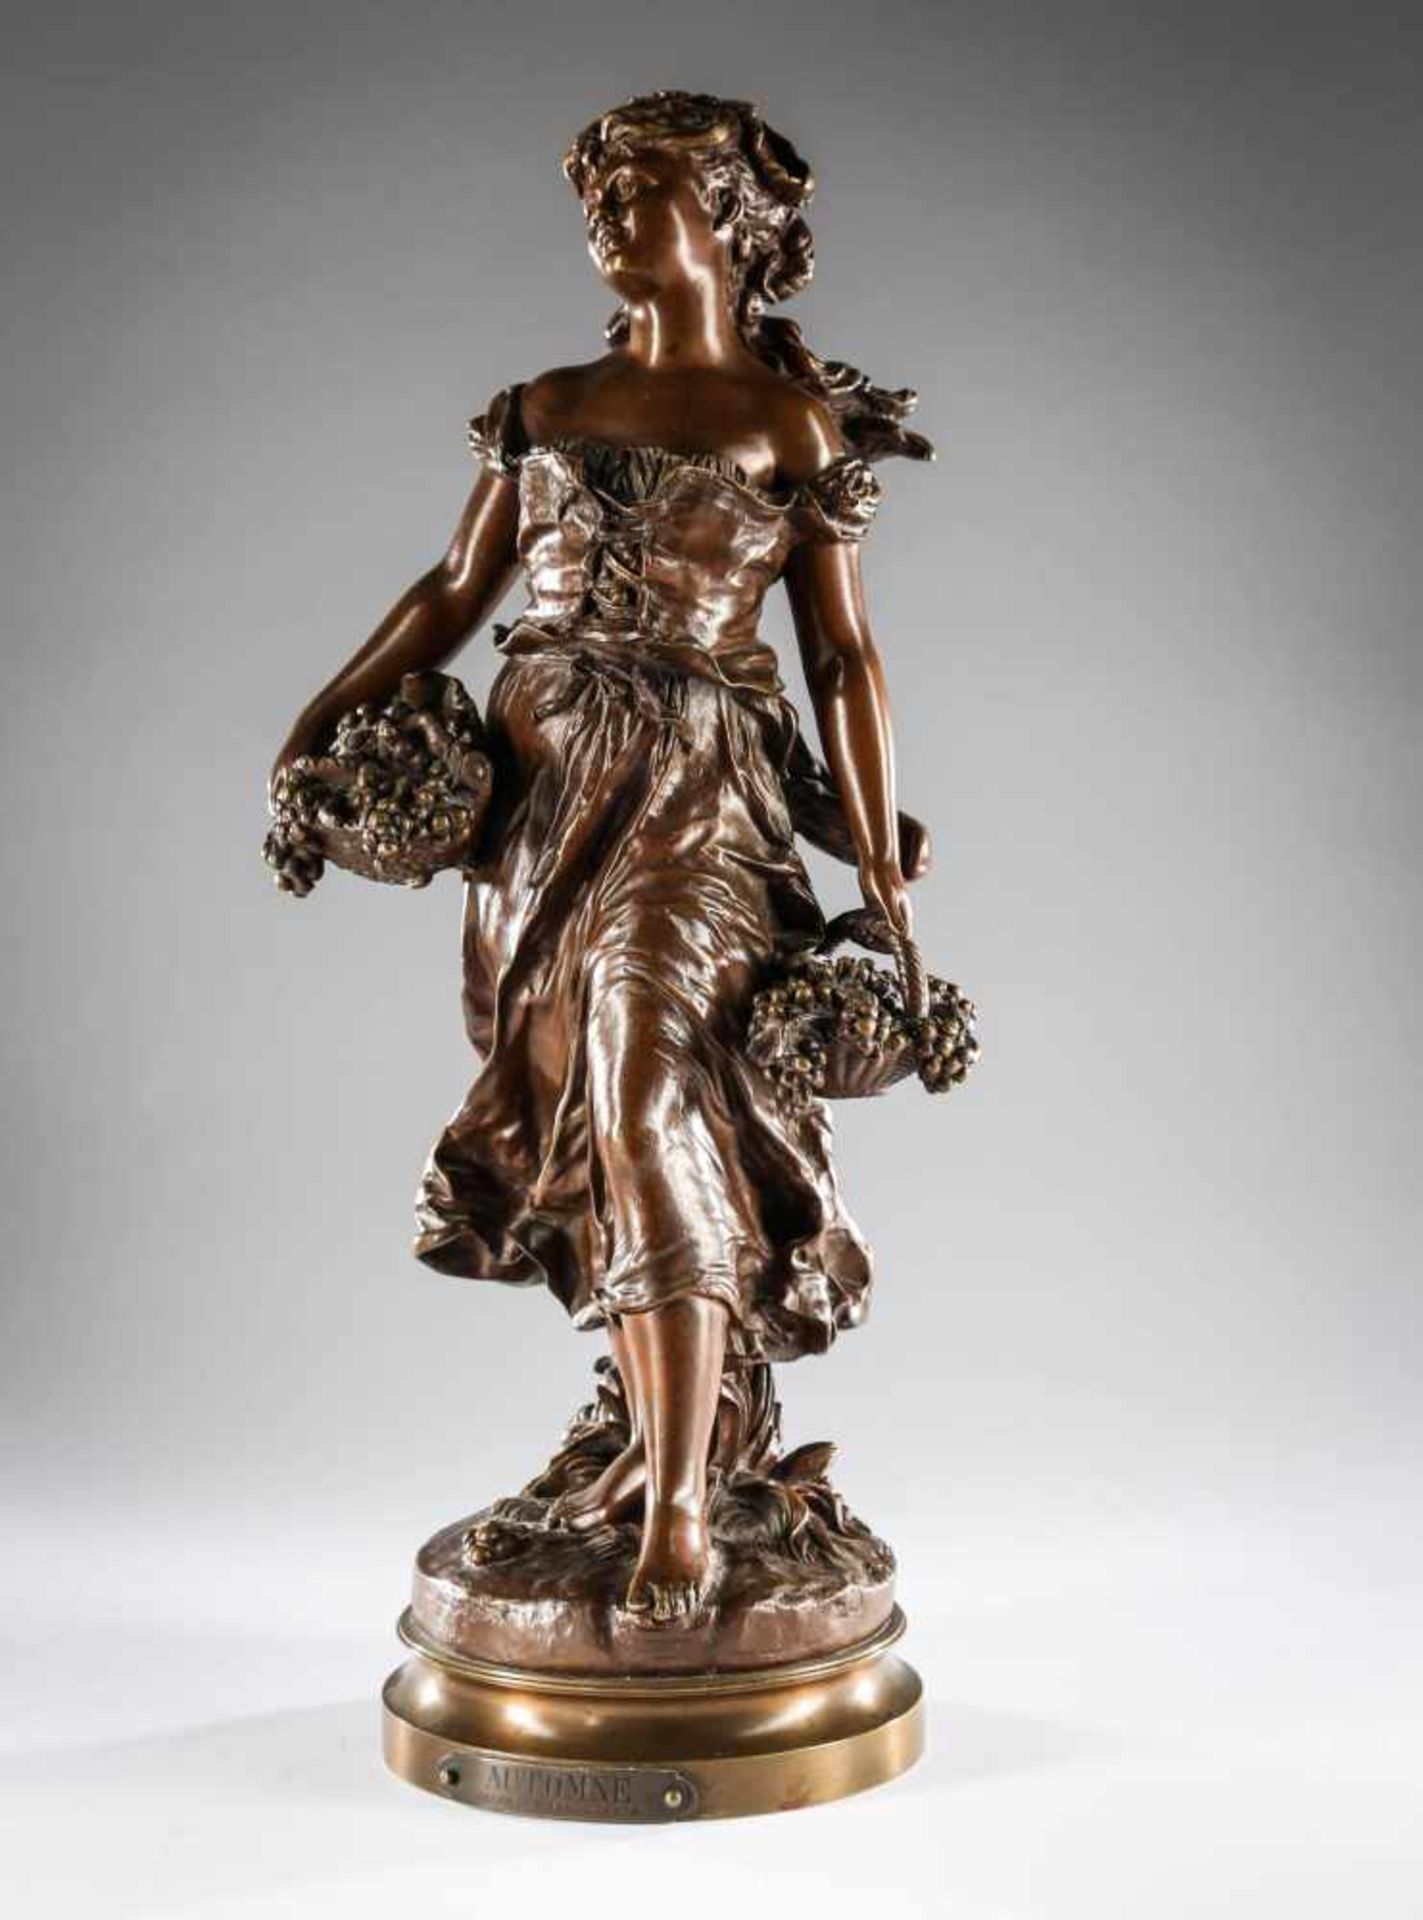 Bronzefigur "Automne - der Herbst",braun patiniert, im Guss signiert "Moreau", Galerieschild "